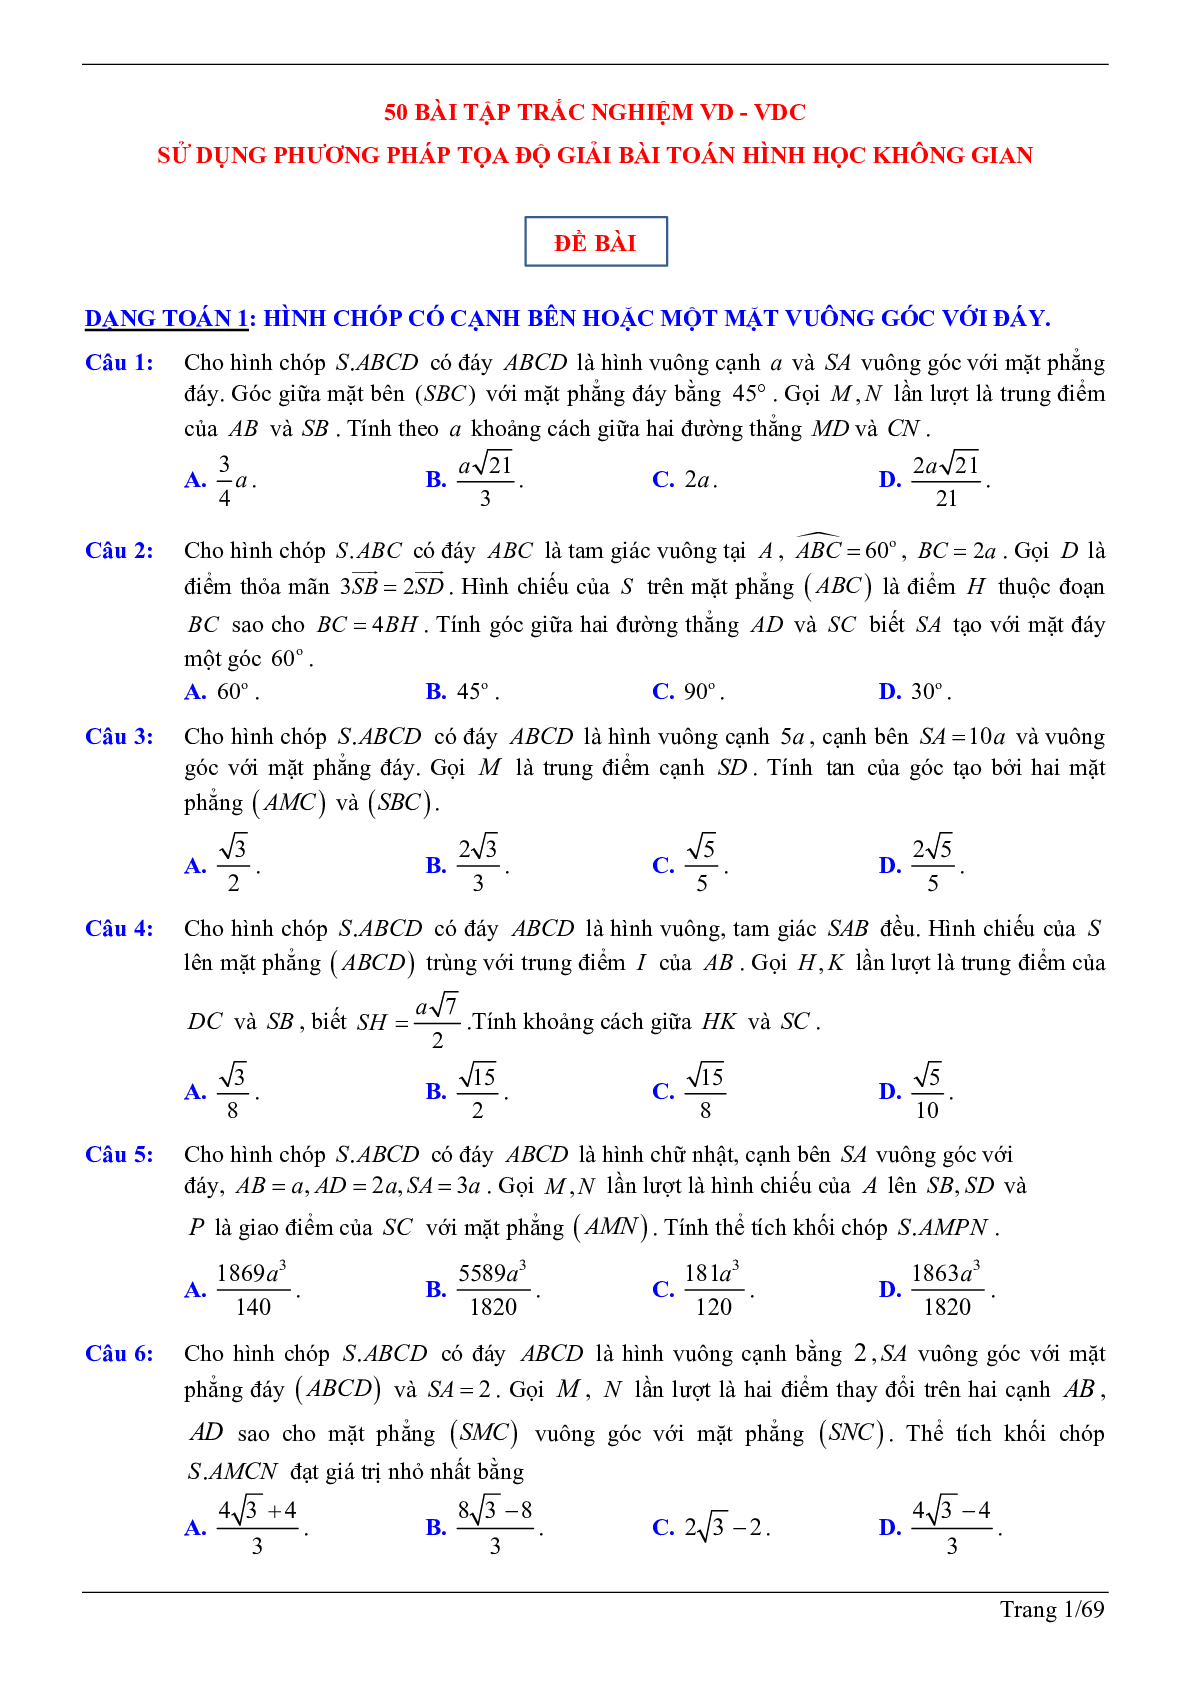 50 câu trắc nghiệm sử dụng phương pháp tọa độ giải bài toán hình học không gian - có đáp án chi tiết (trang 1)